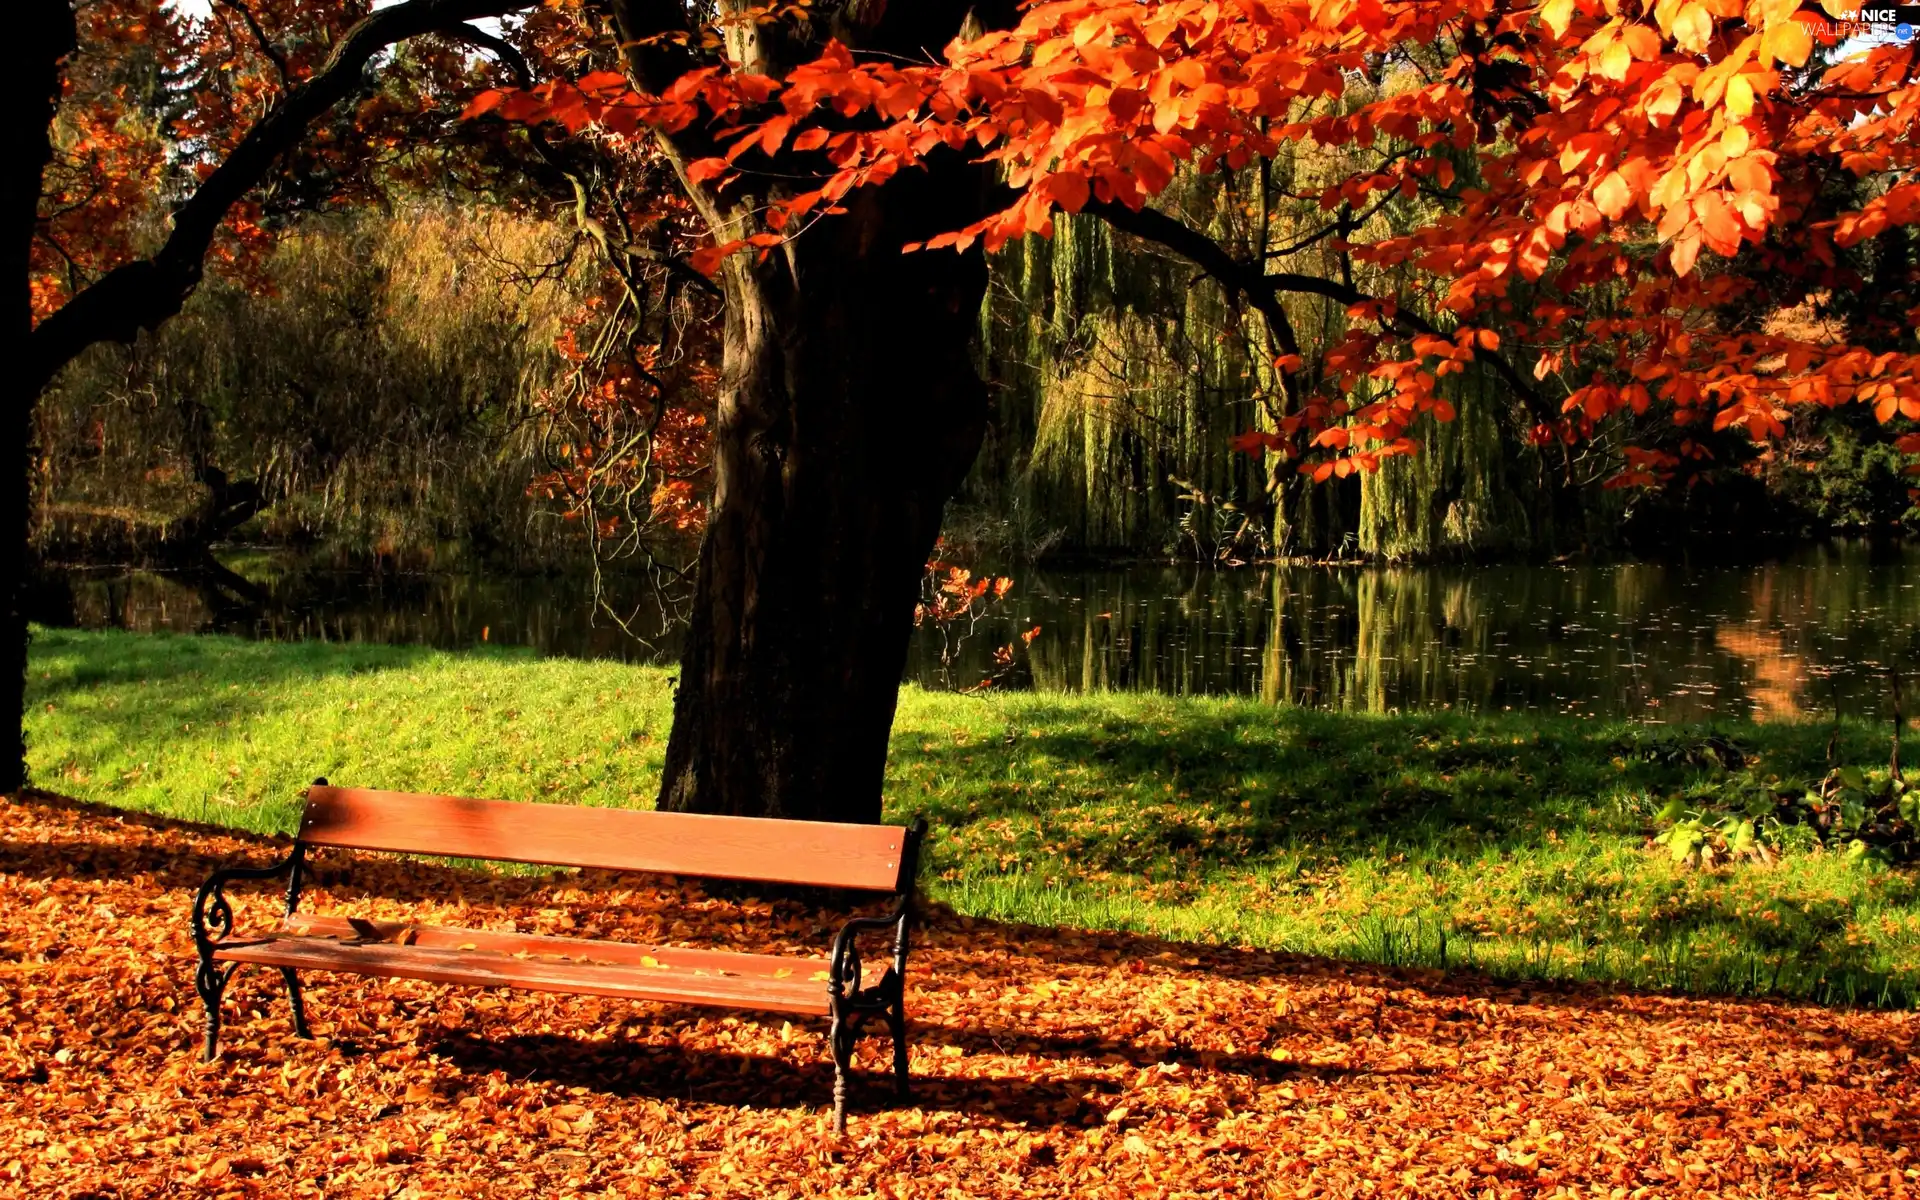 Leaf, autumn, River, Bench, Park